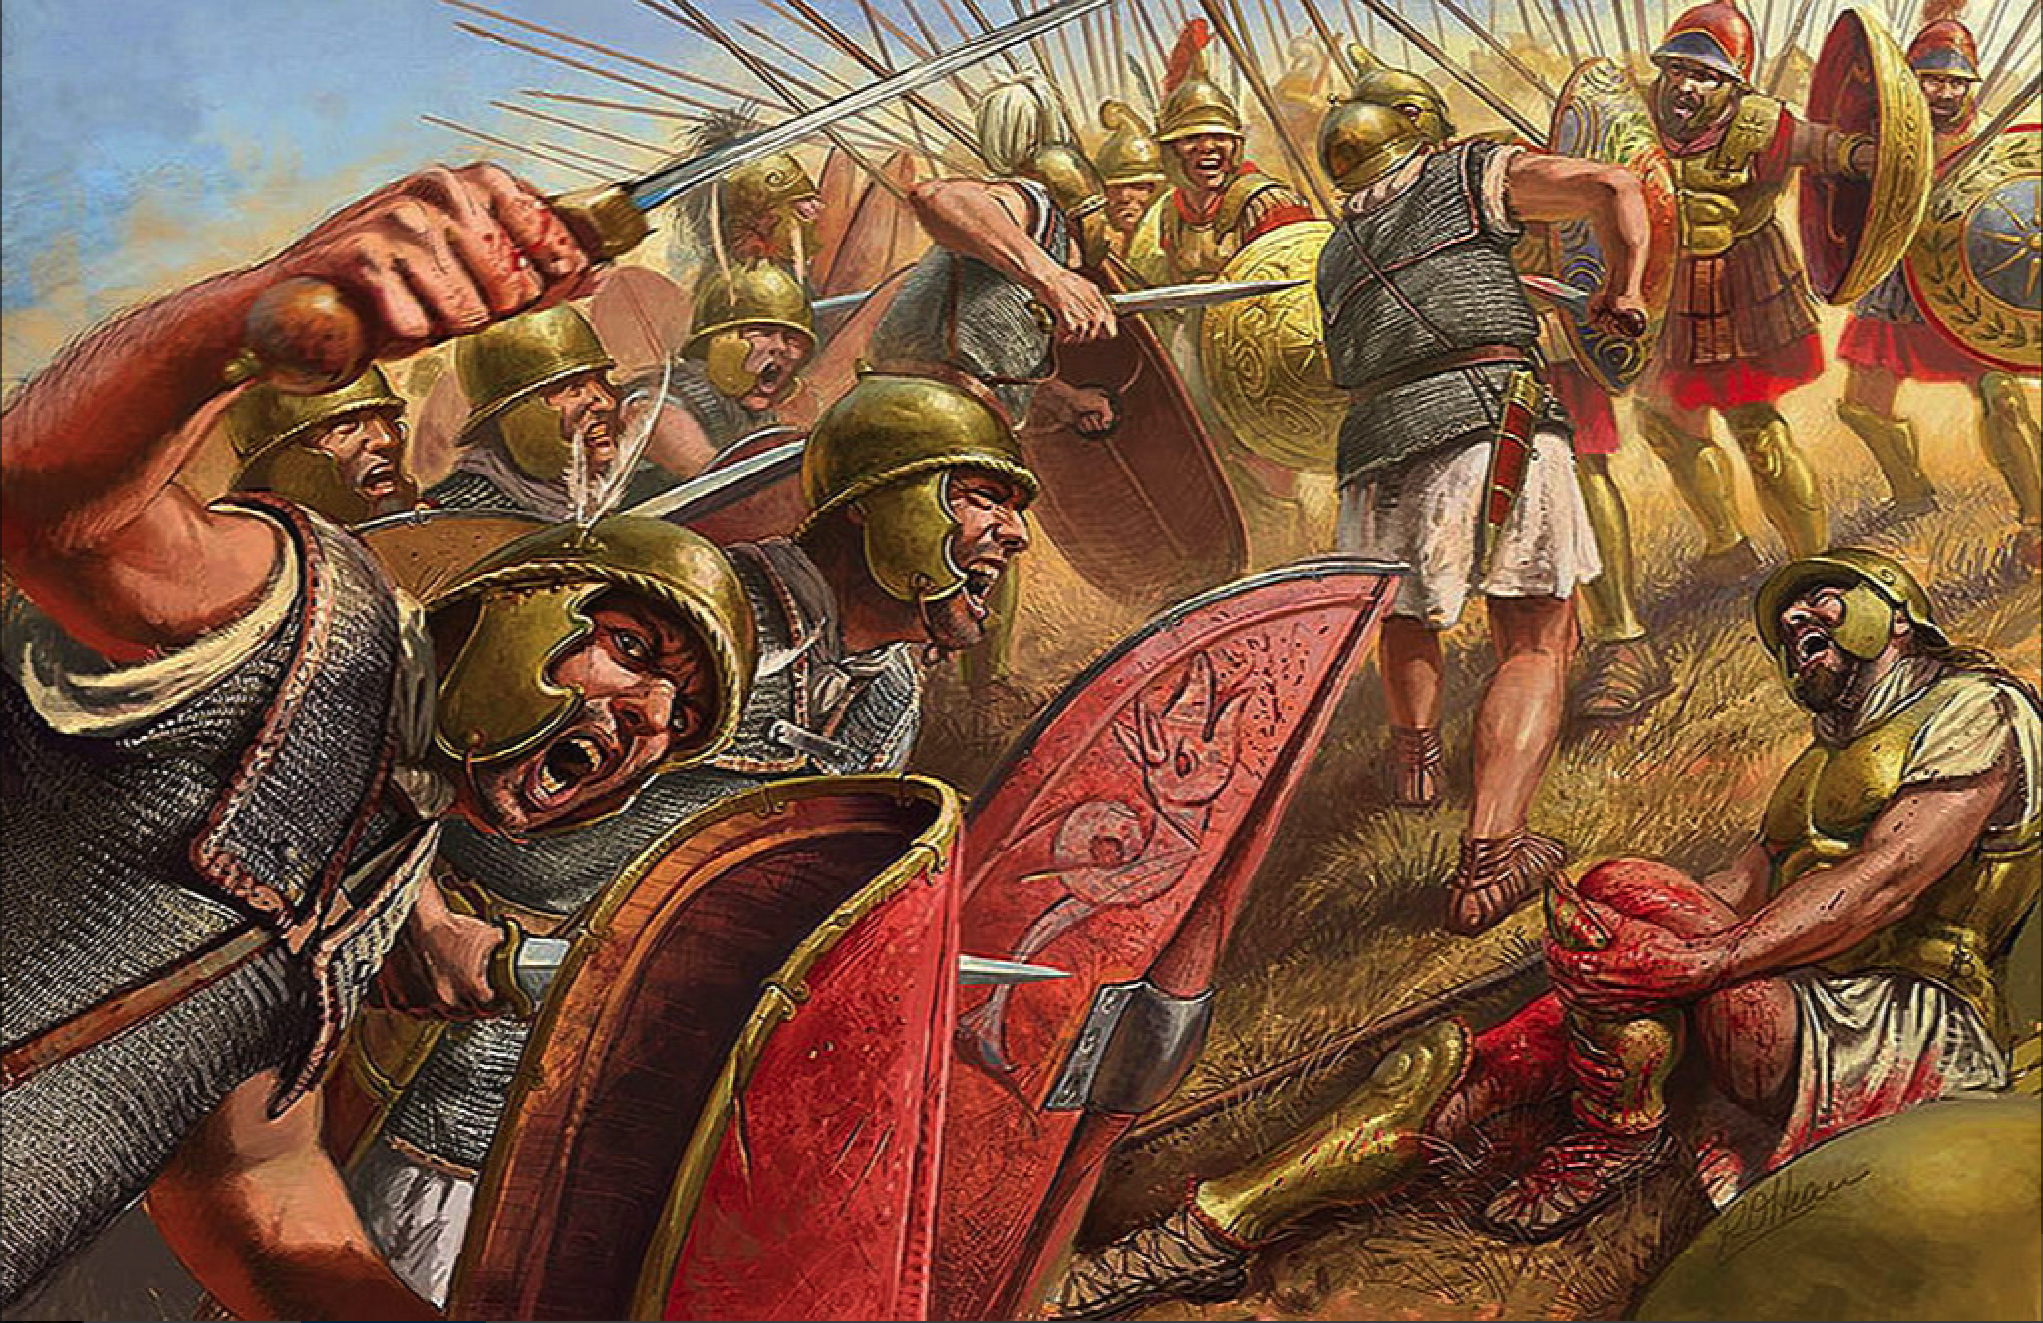 Битвы греческих полководцев. Битва при Киноскефалах 197 г до н.э. Римский Легион фаланга. Битва македонцев против римлян. Македонская фаланга.